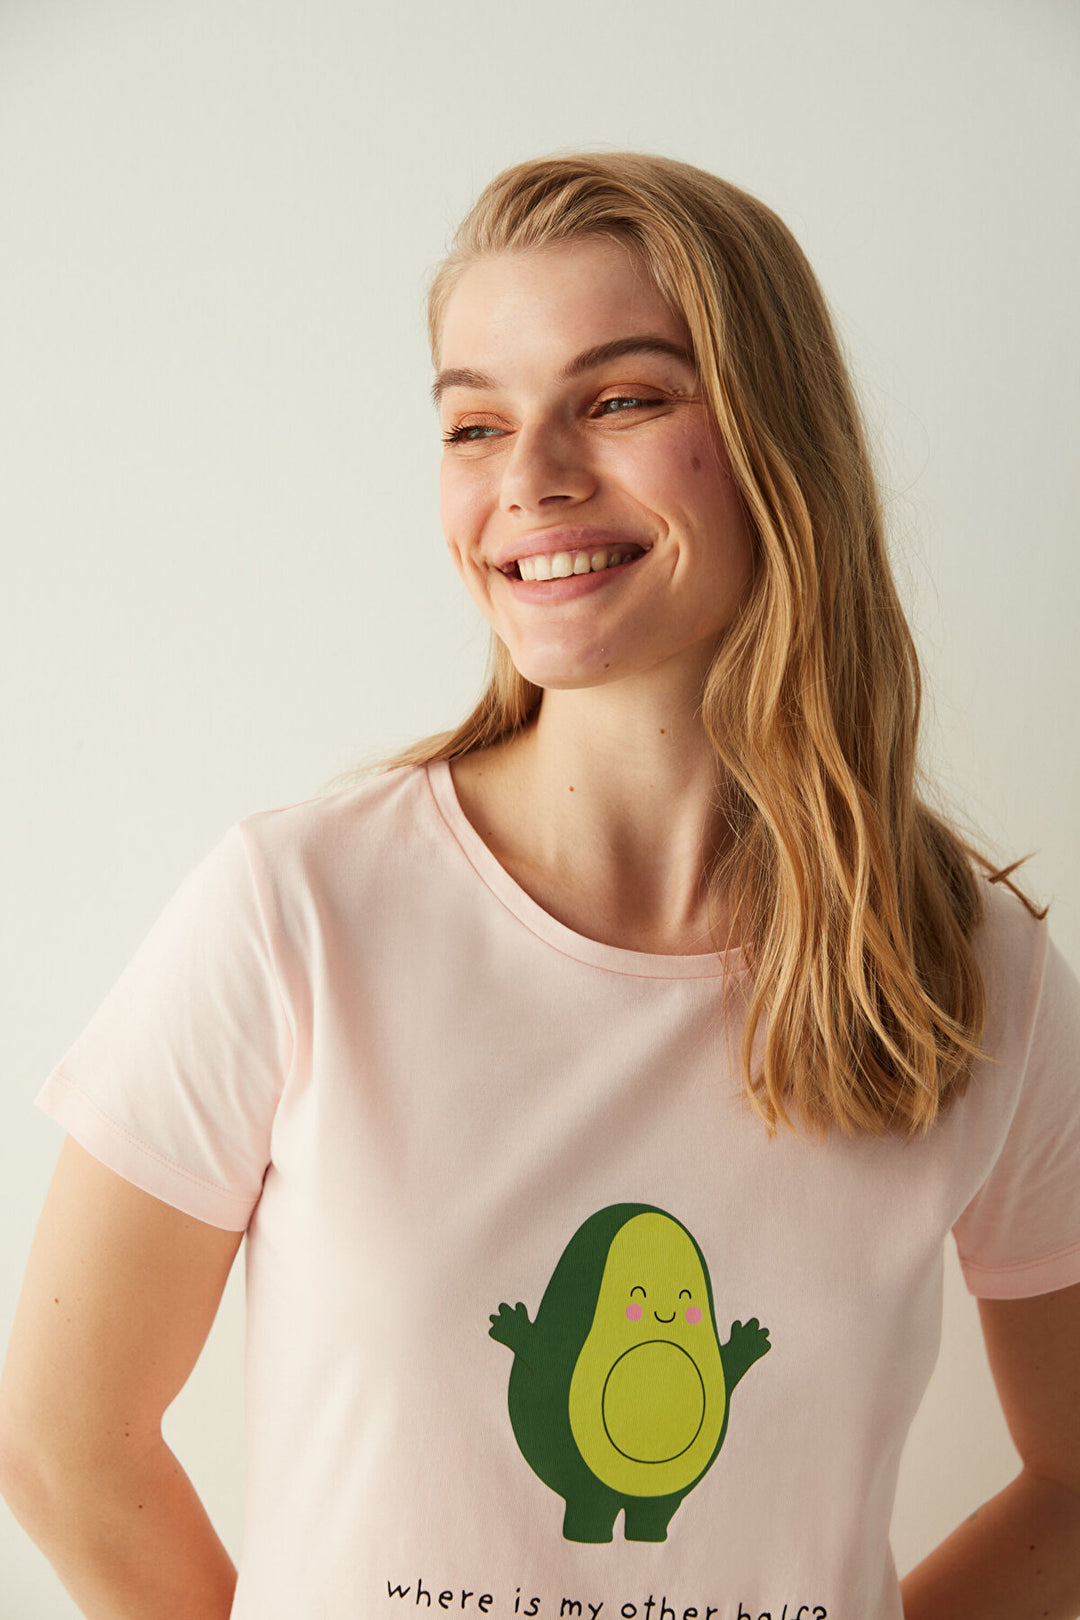 مجموعة Ent Avocado مكونة من شورت وقميص بأكمام قصيرة